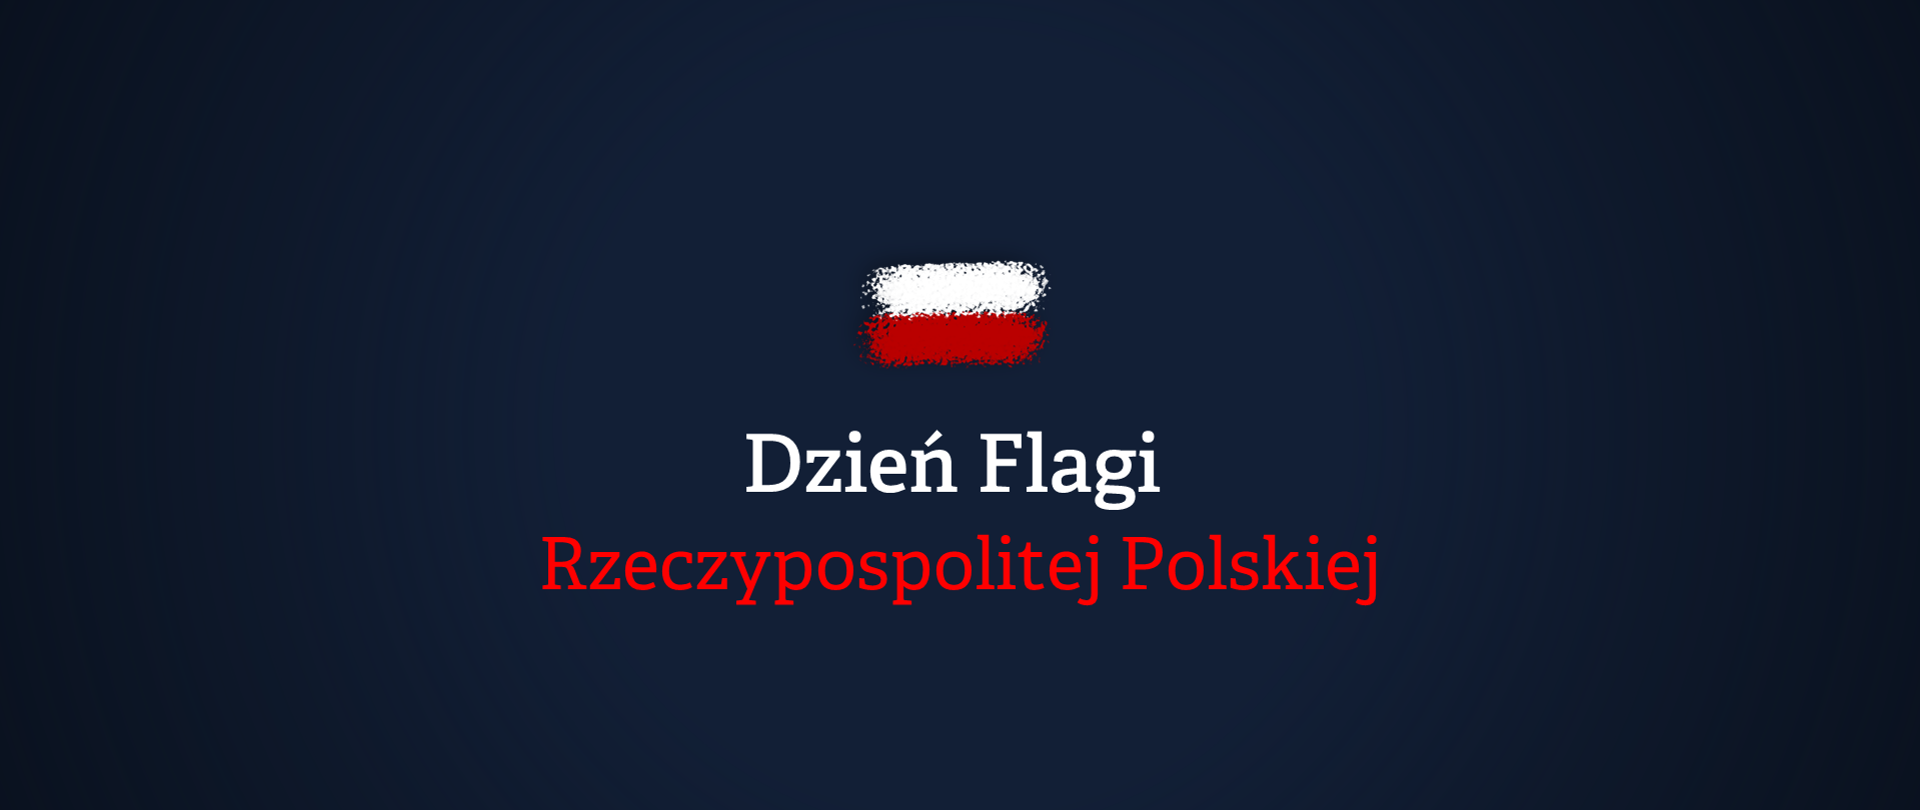 Granatowe tło. Pośrodku niewielka biało-czerwona flaga jakby namalowana sprayem. Poniżej biało-czerwony napis Dzień Flagi Rzeczypospolitej Polskiej